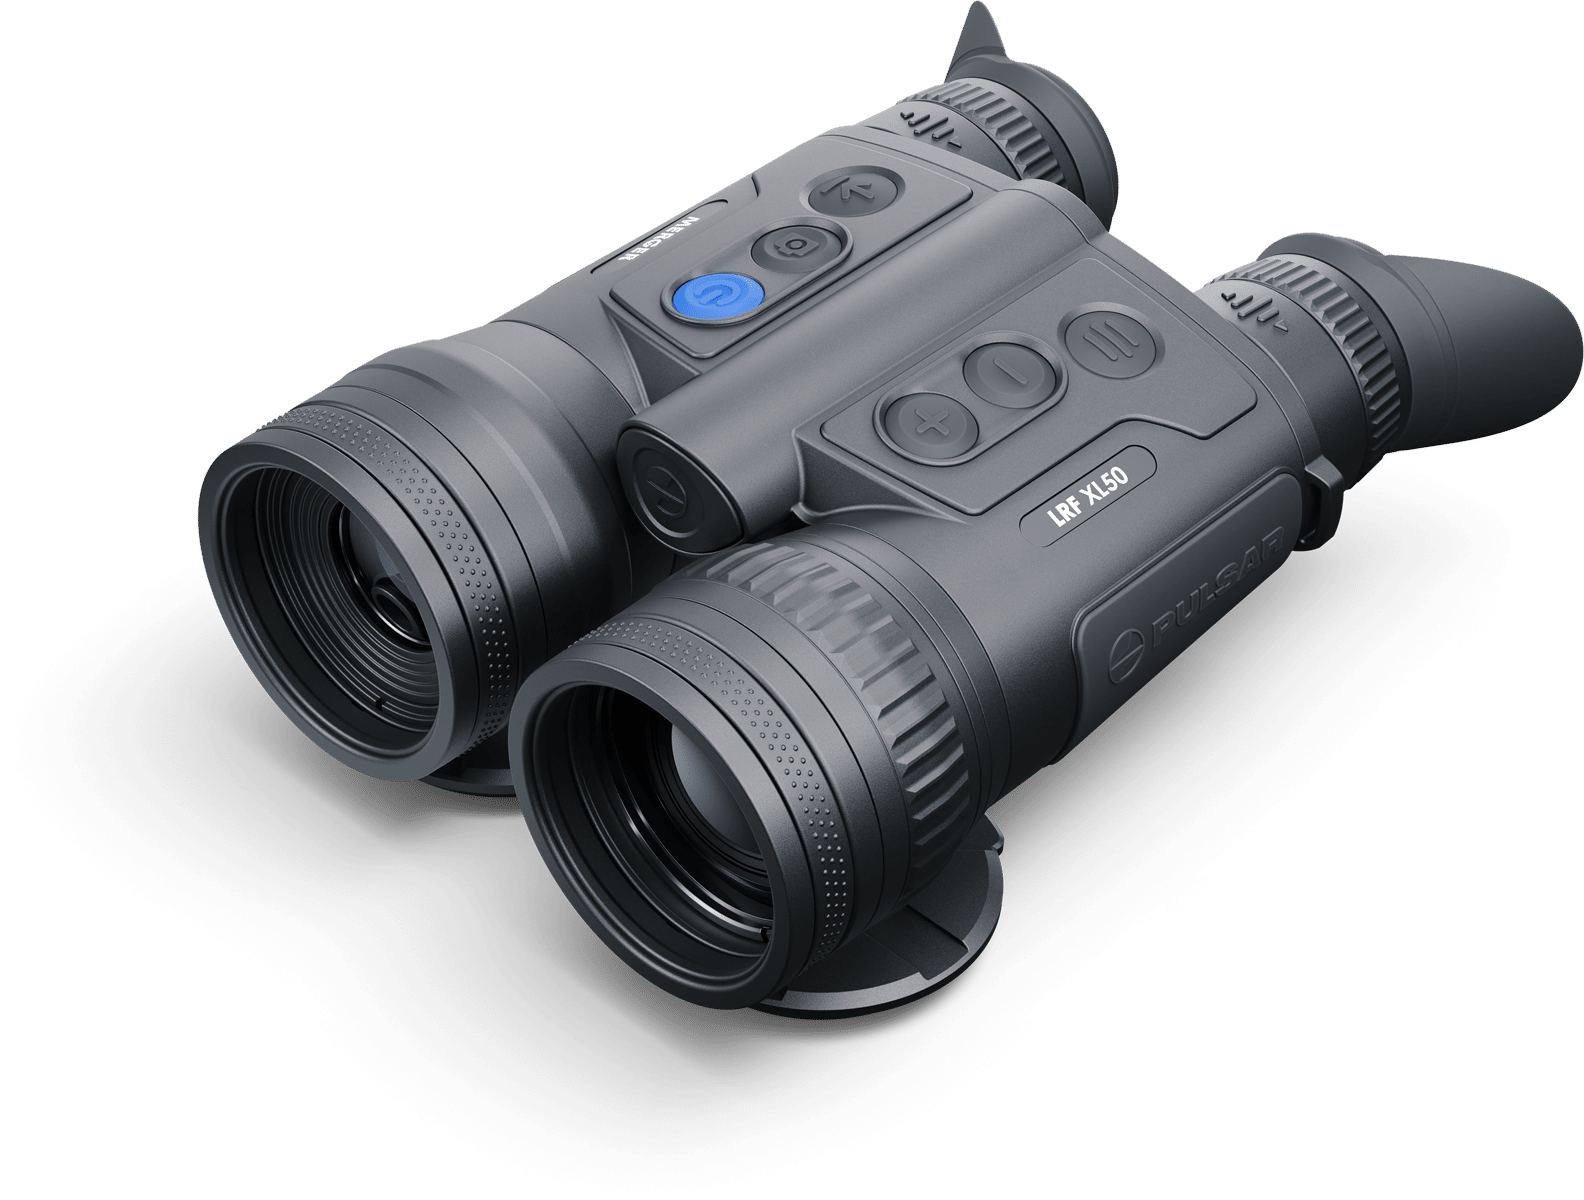 Pulsar Merger LRF XL50 Thermal Binoculars